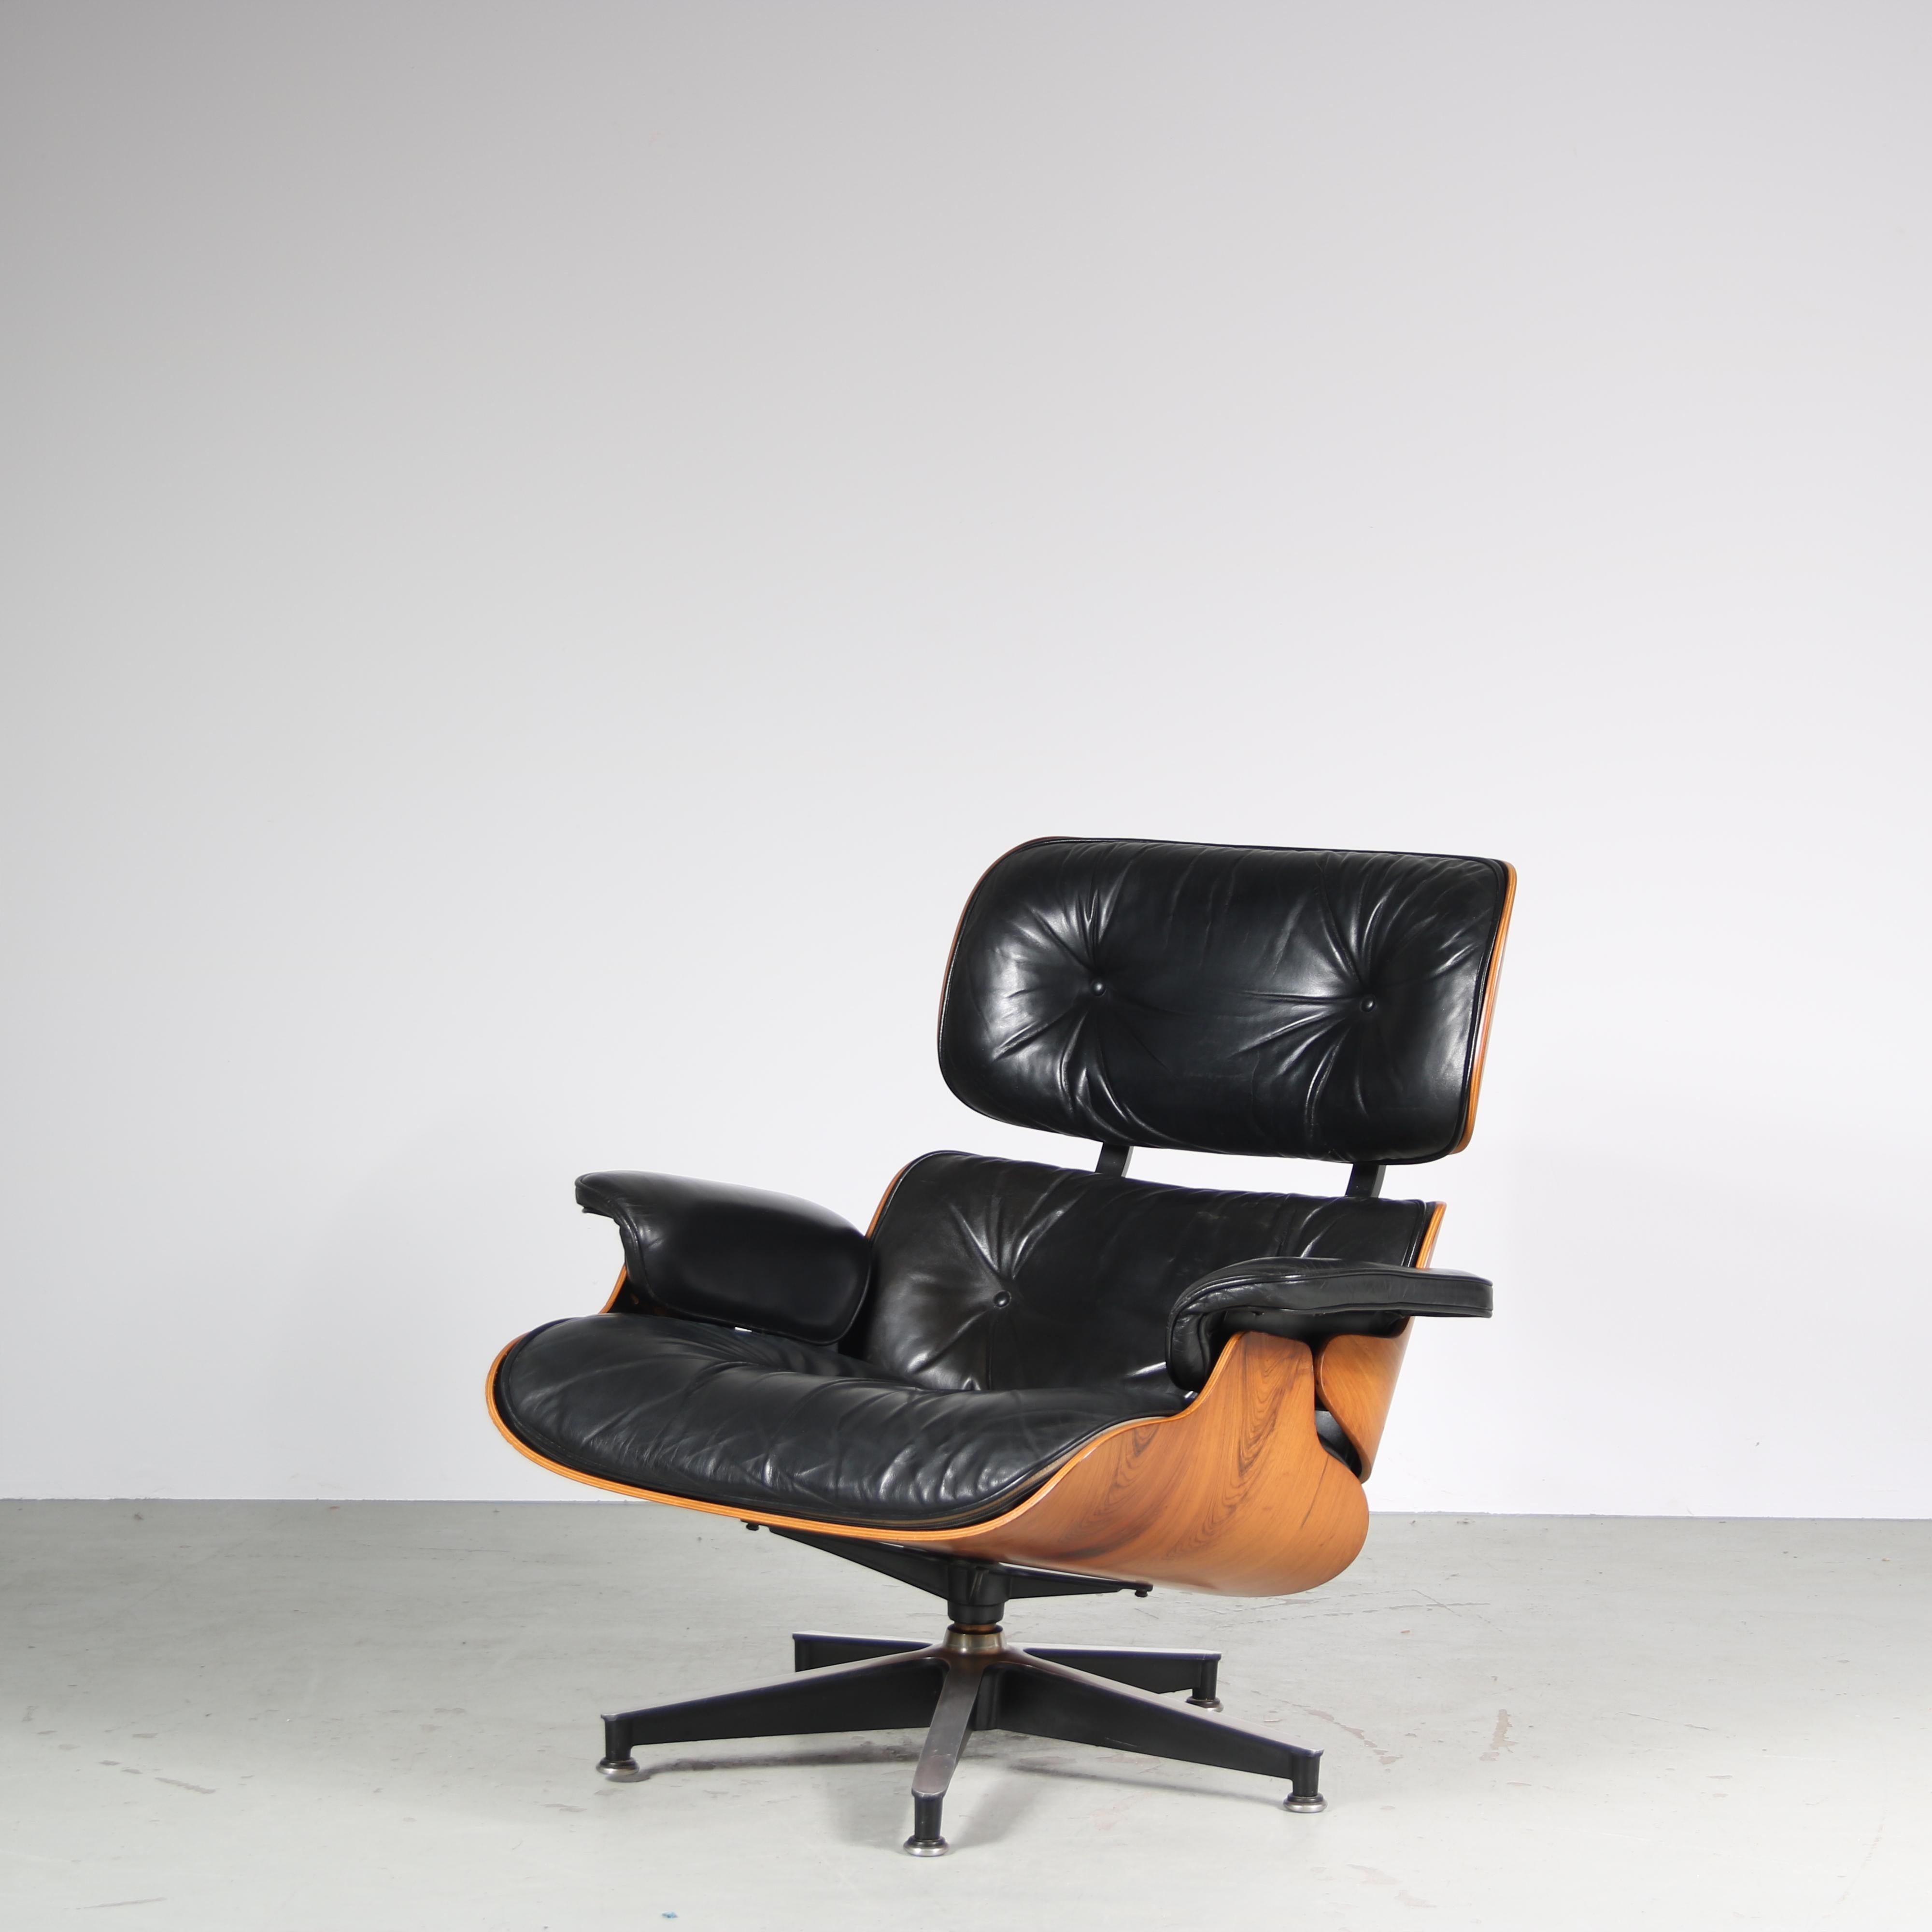 

Cette chaise longue a été conçue par Charles & Ray Eames et fabriquée par Herman Miller aux États-Unis.

C'est un véritable chef-d'œuvre de design. Sa coque emblématique en contreplaqué marron foncé offre une assise incroyablement élégante et